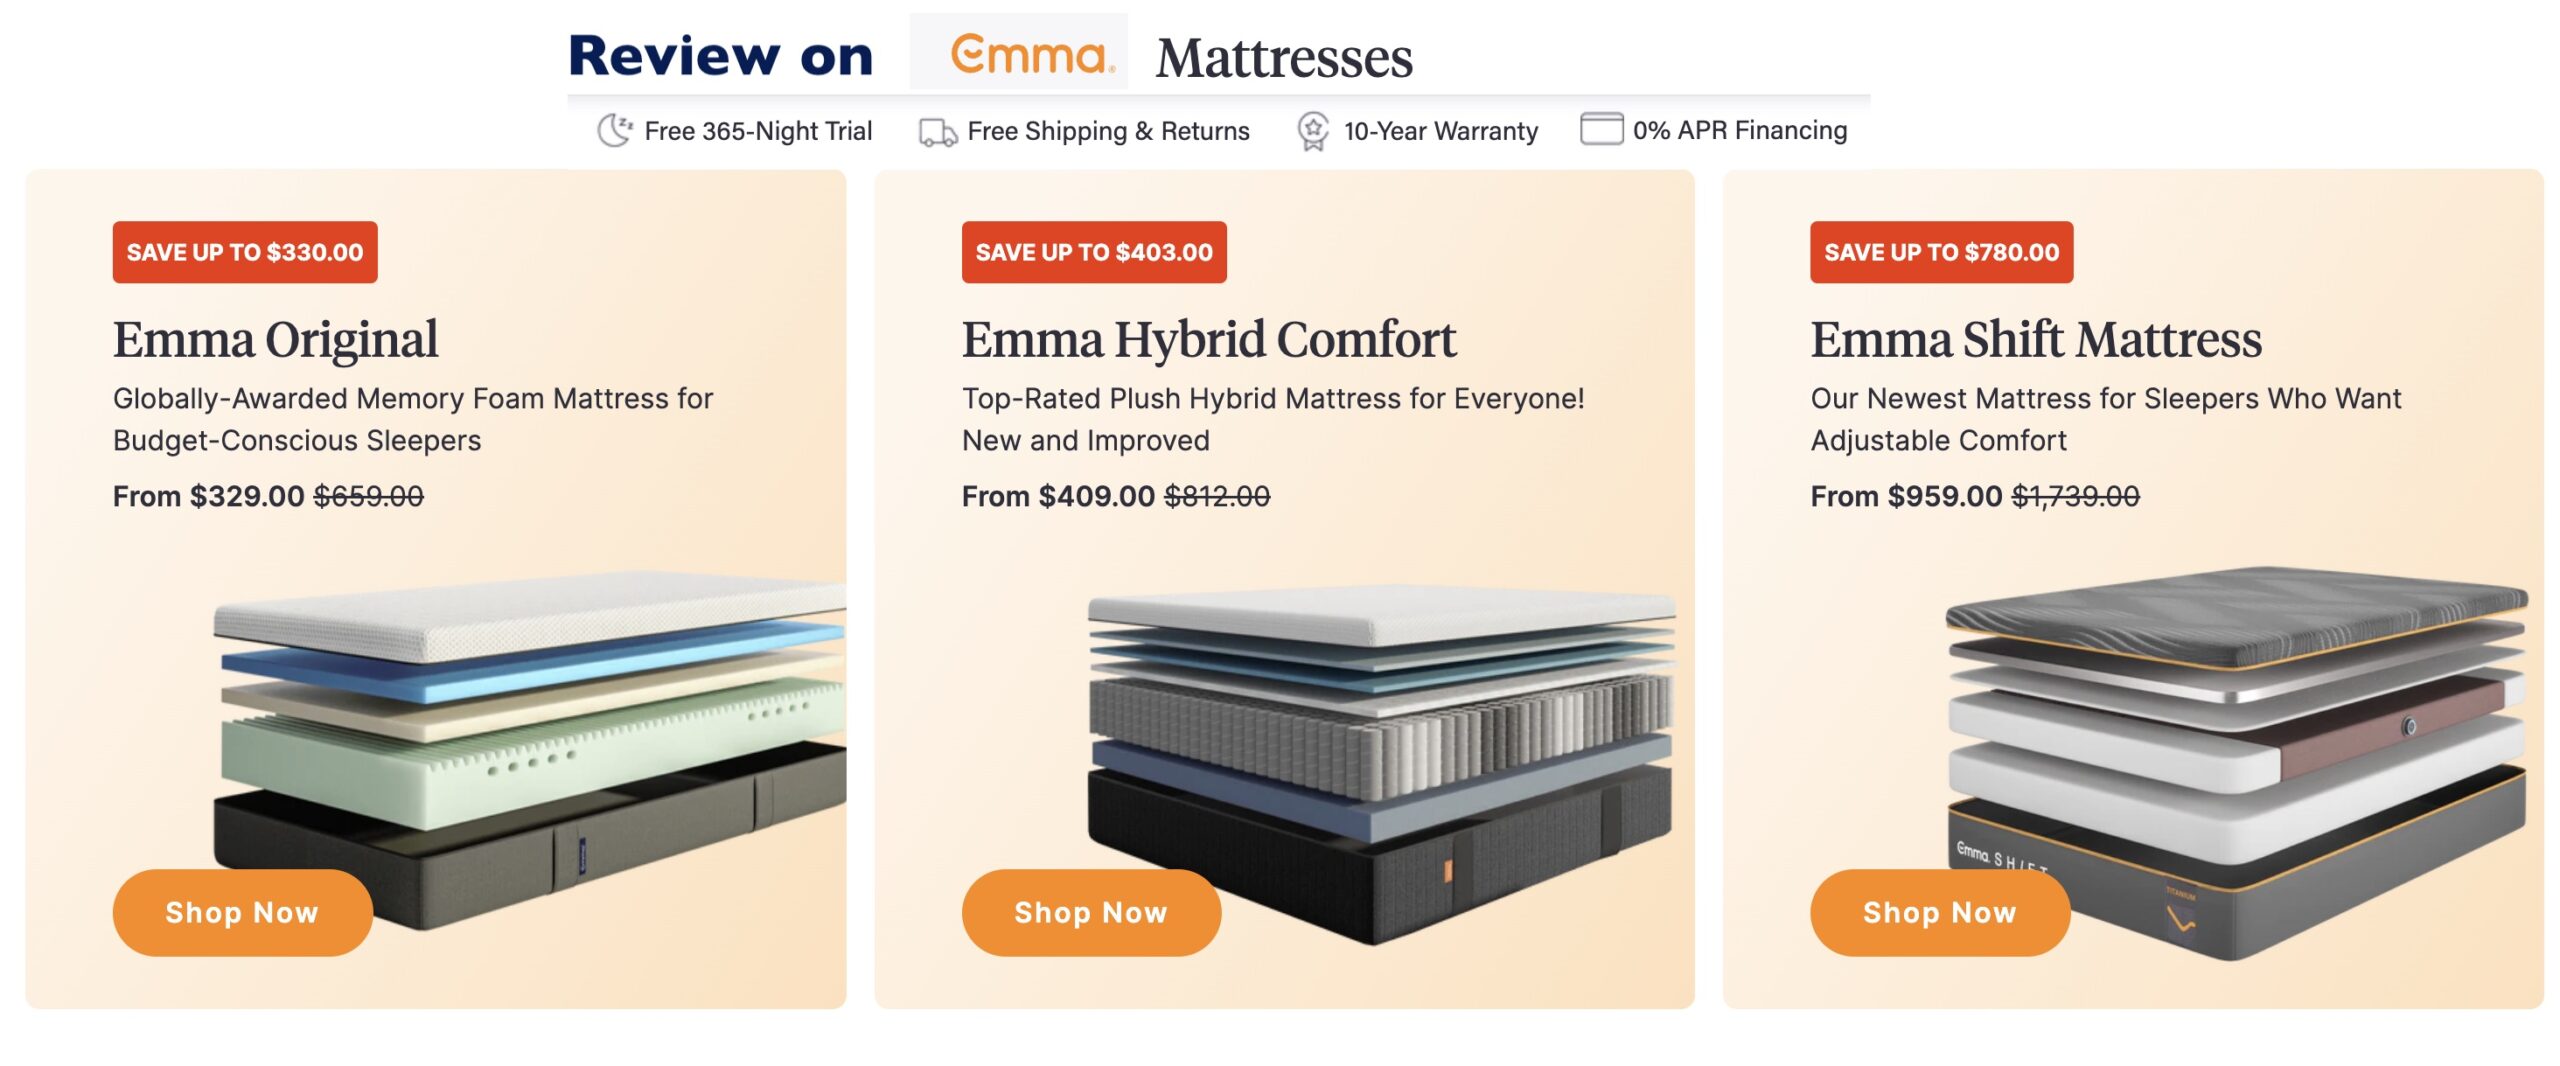 Emmas mattress reviews